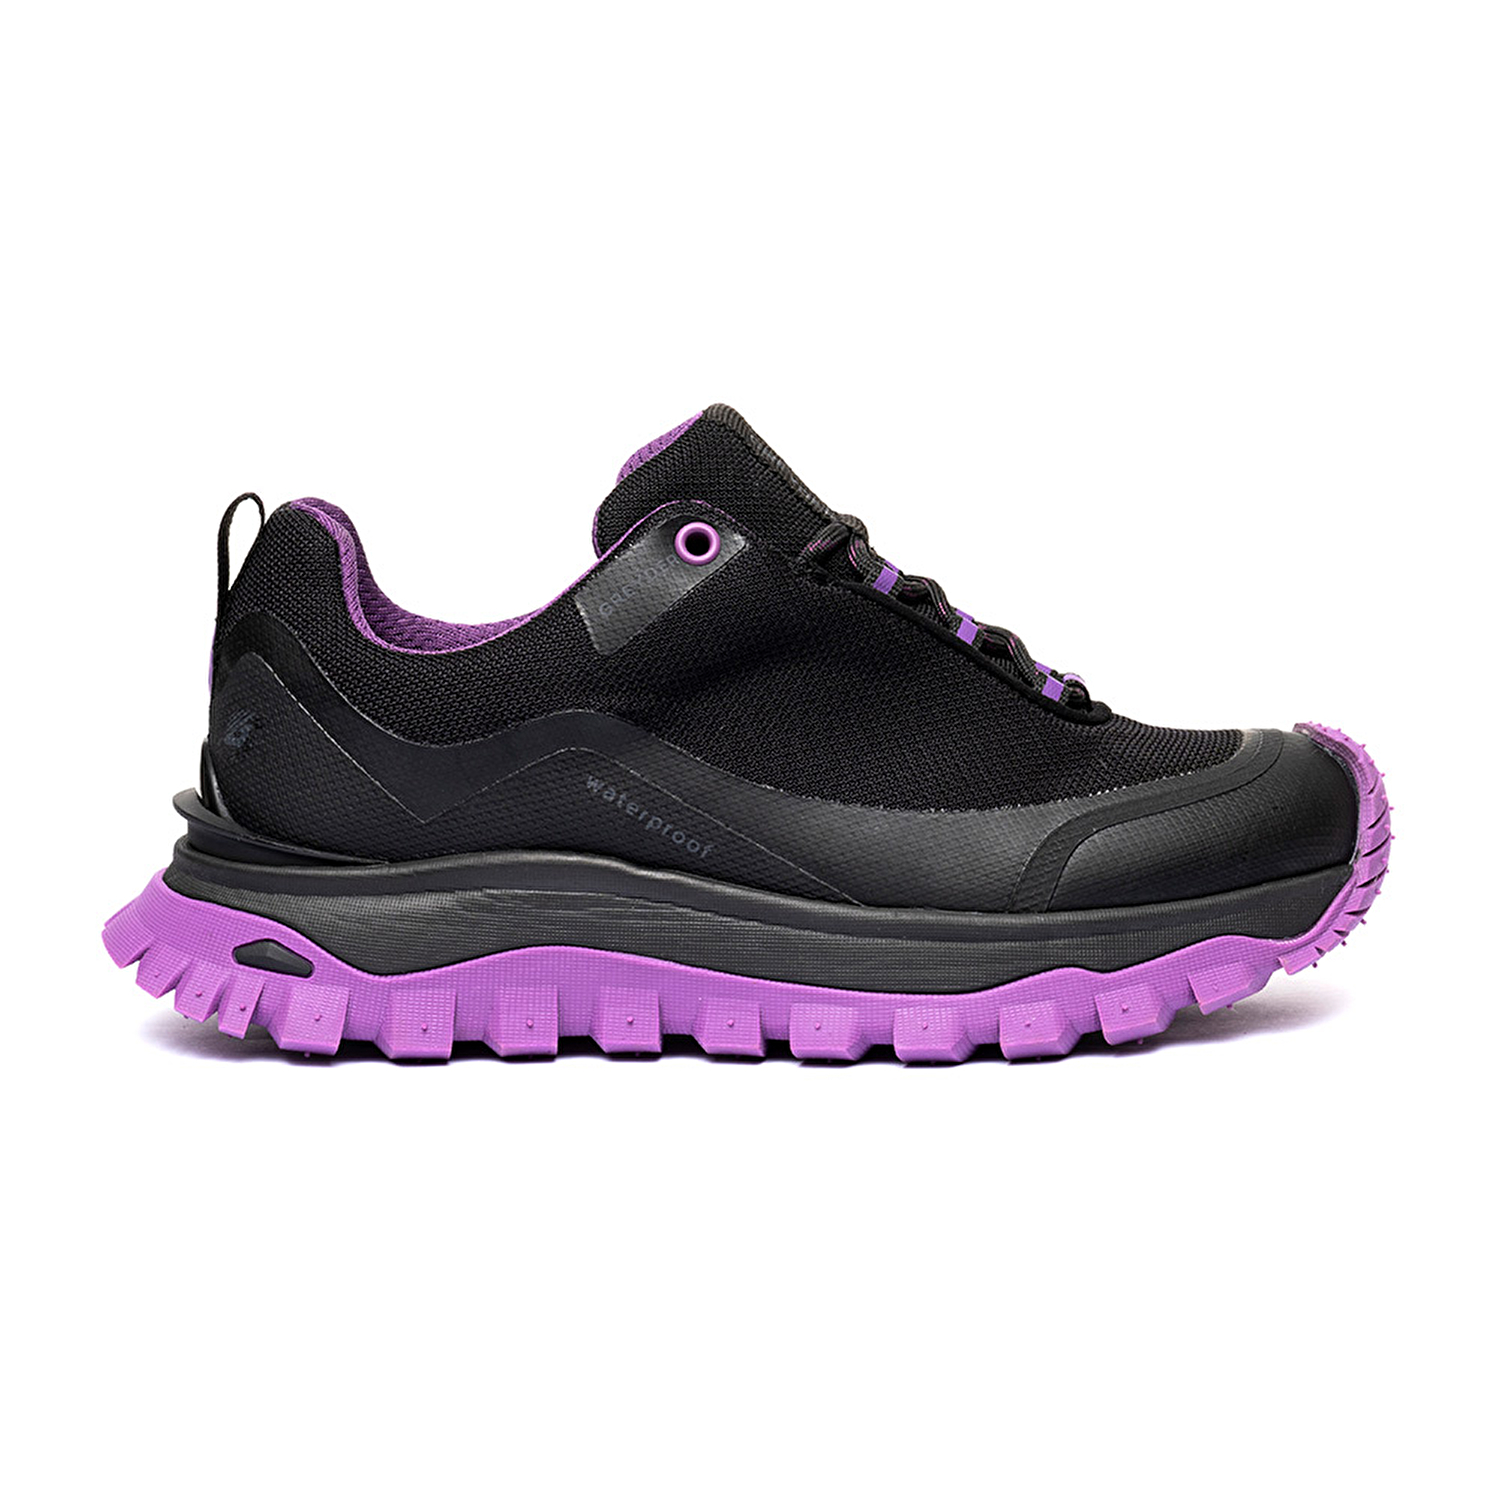 Kadın Siyah Mor Su Geçirmez Outdoor Ayakkabı 3K2GA16357-1